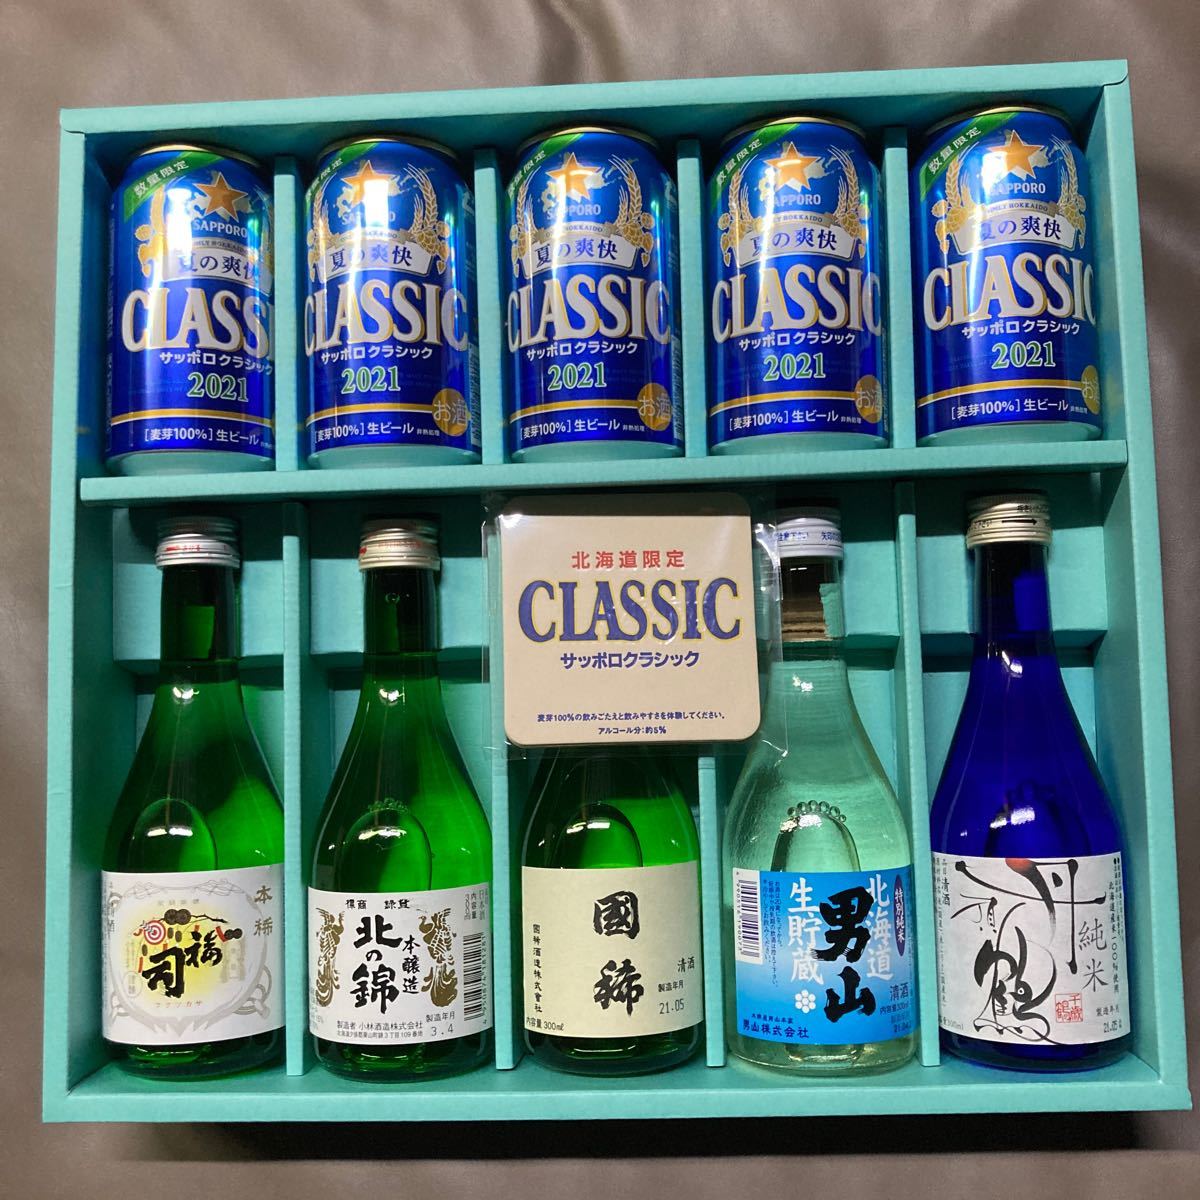 サッポロクラシック2021 ビール5本 日本酒5本 セット 夏の爽快